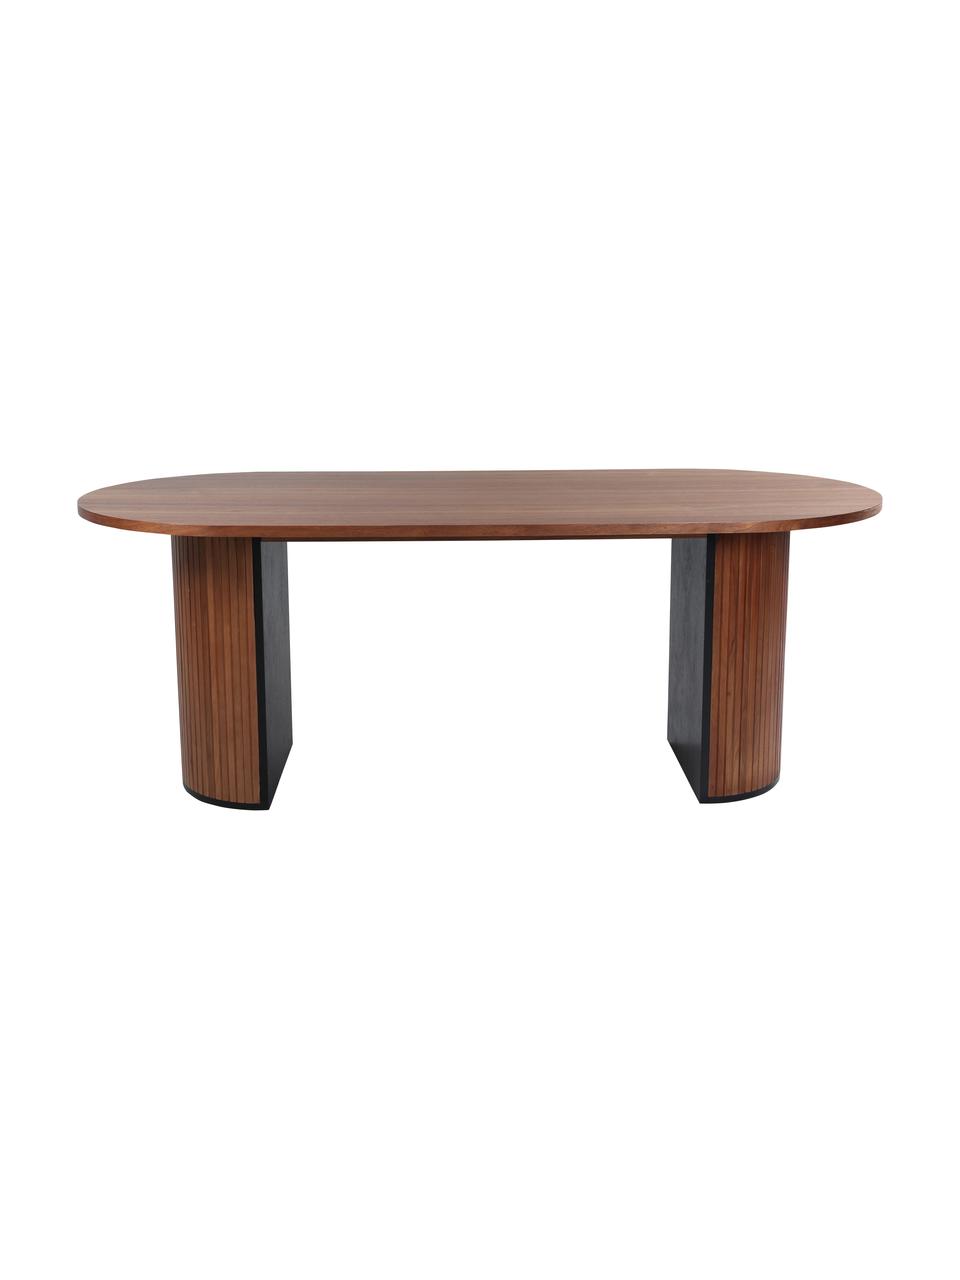 Oválný jídelní stůl Bianca, 200 x 90 cm, Dubové dřevo, tmavě lakované, Š 200 cm, H 90 cm